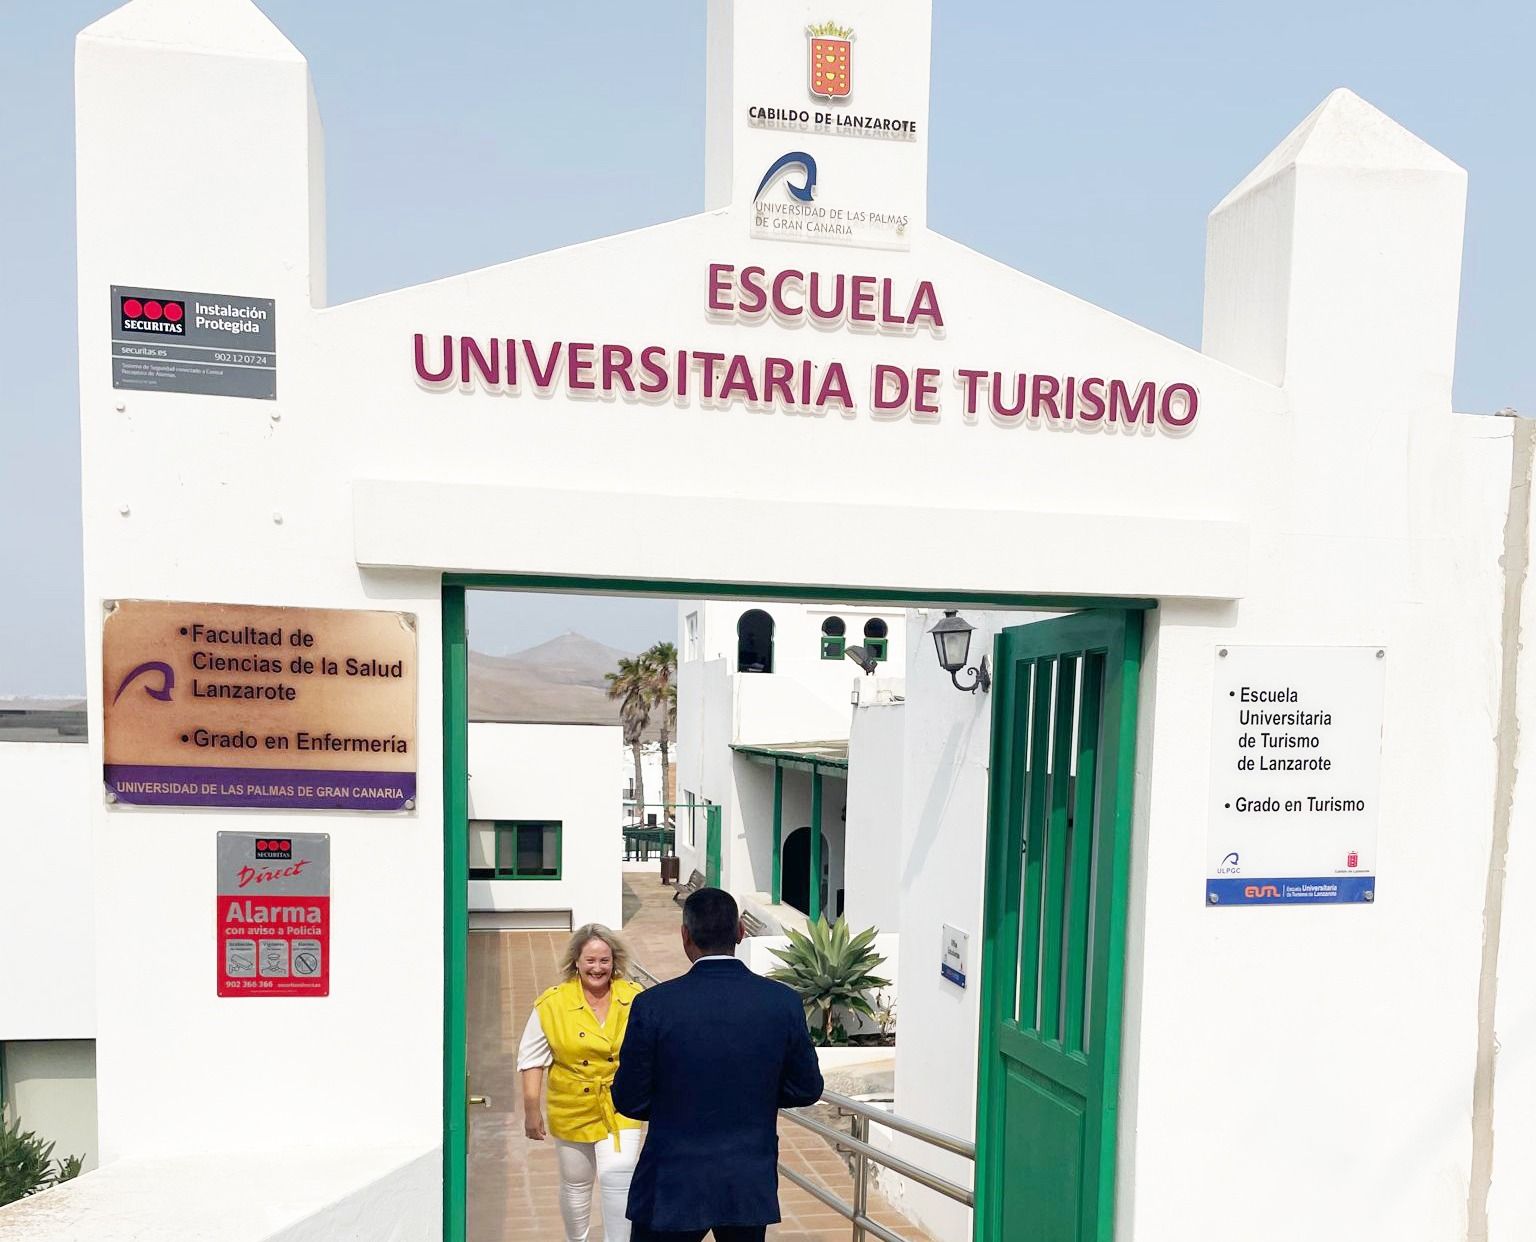 El presidente del Cabildo de Lanzarote, Oswaldo Betancort, visita la Escuela Universitaria de Turismo de Lanzarote